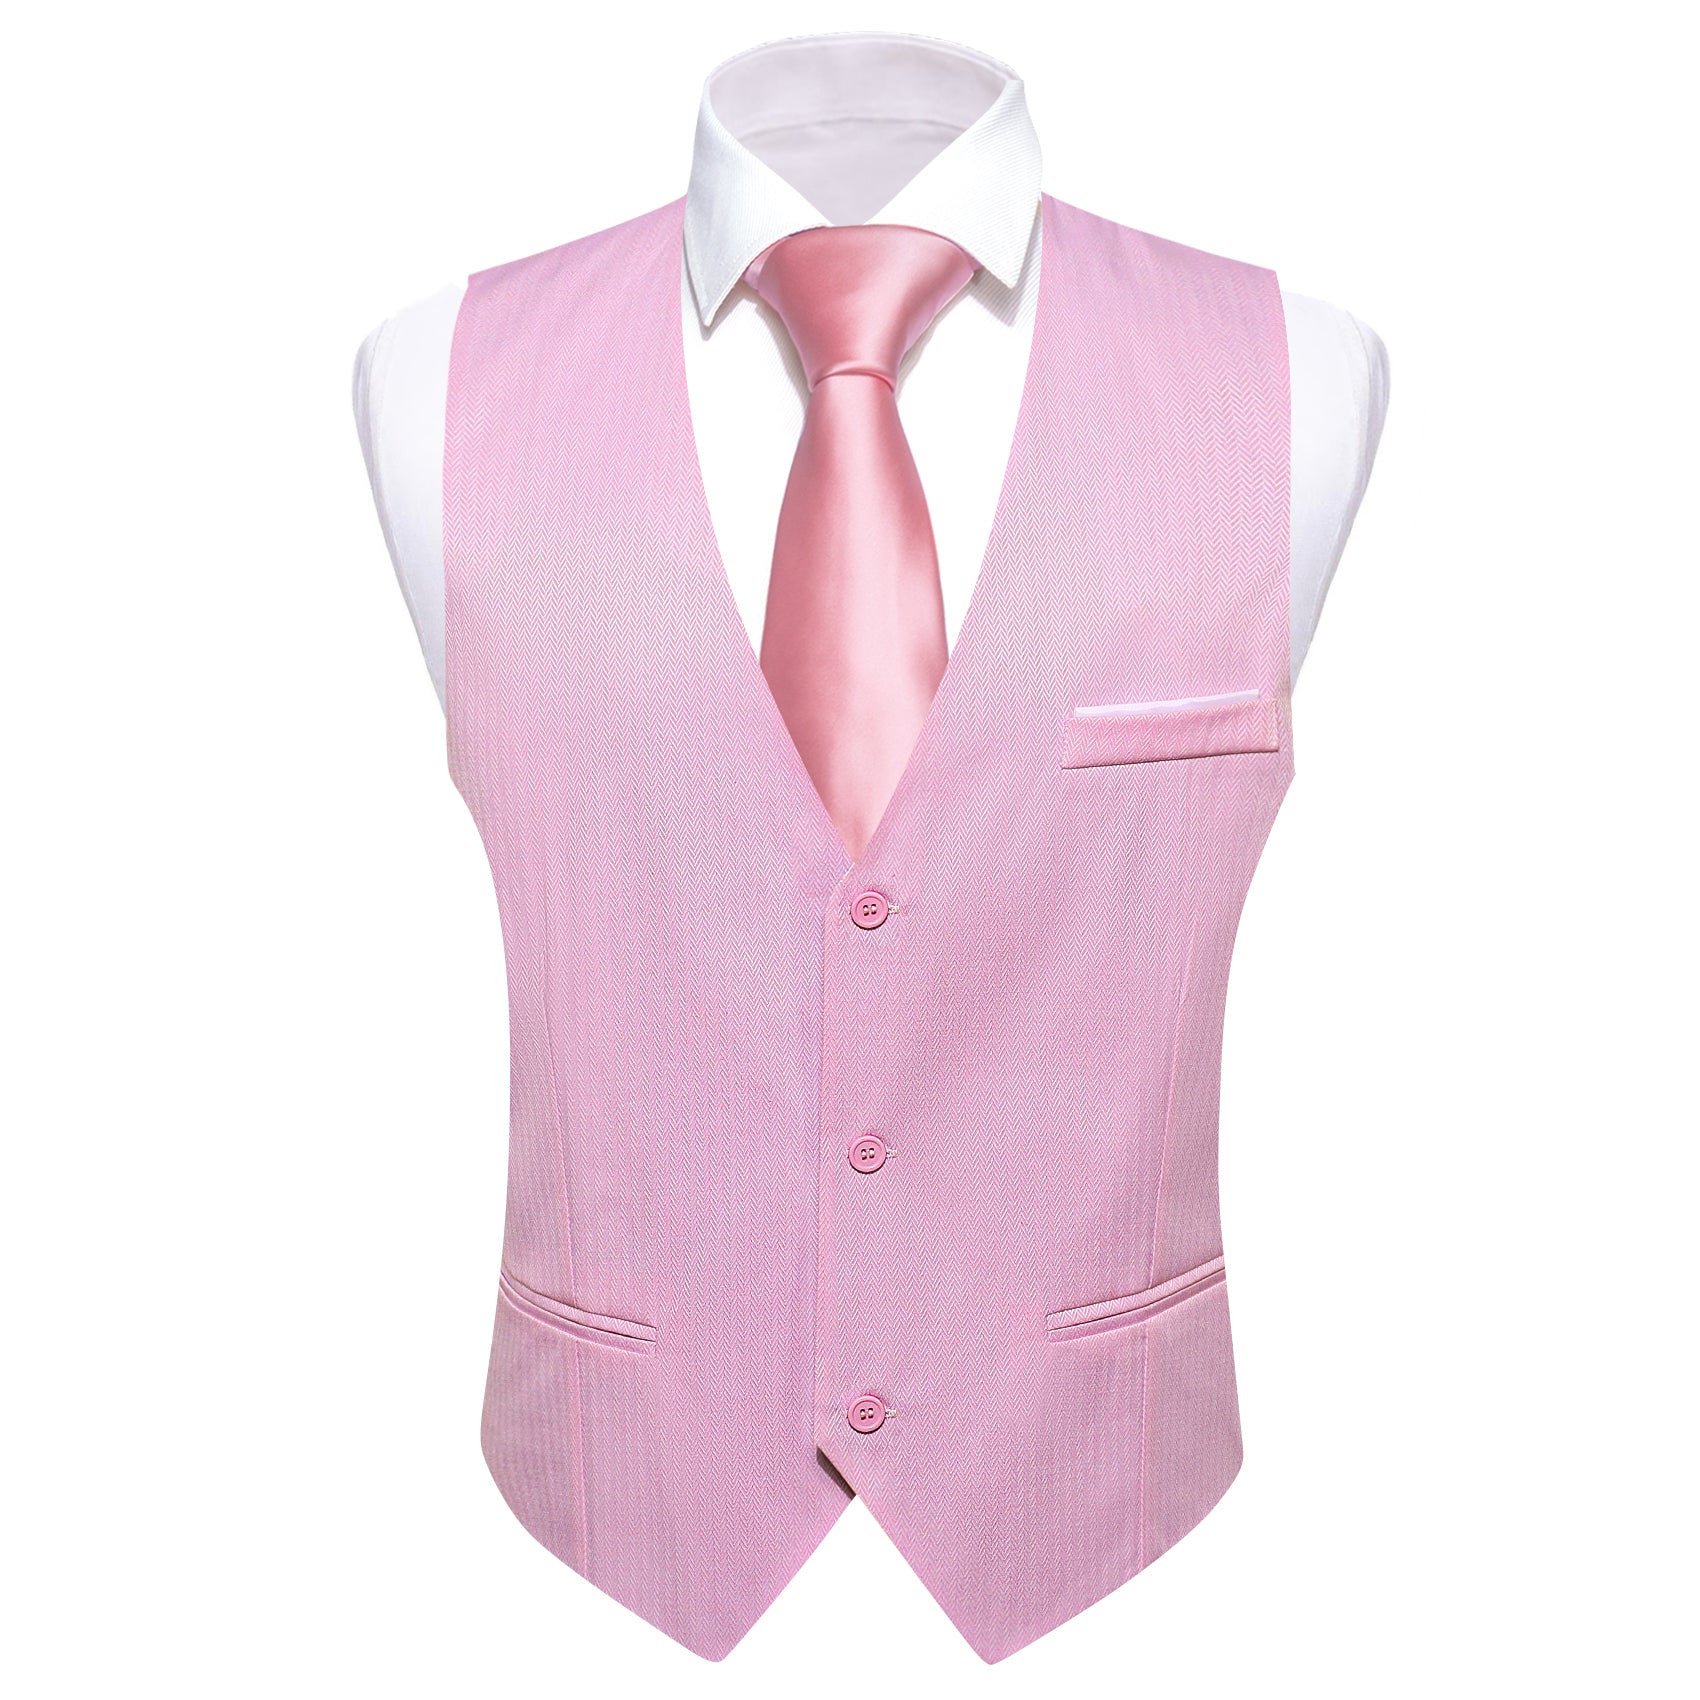  Vest Men's Pink Solid V-Neck Waistcoat Suit for Business